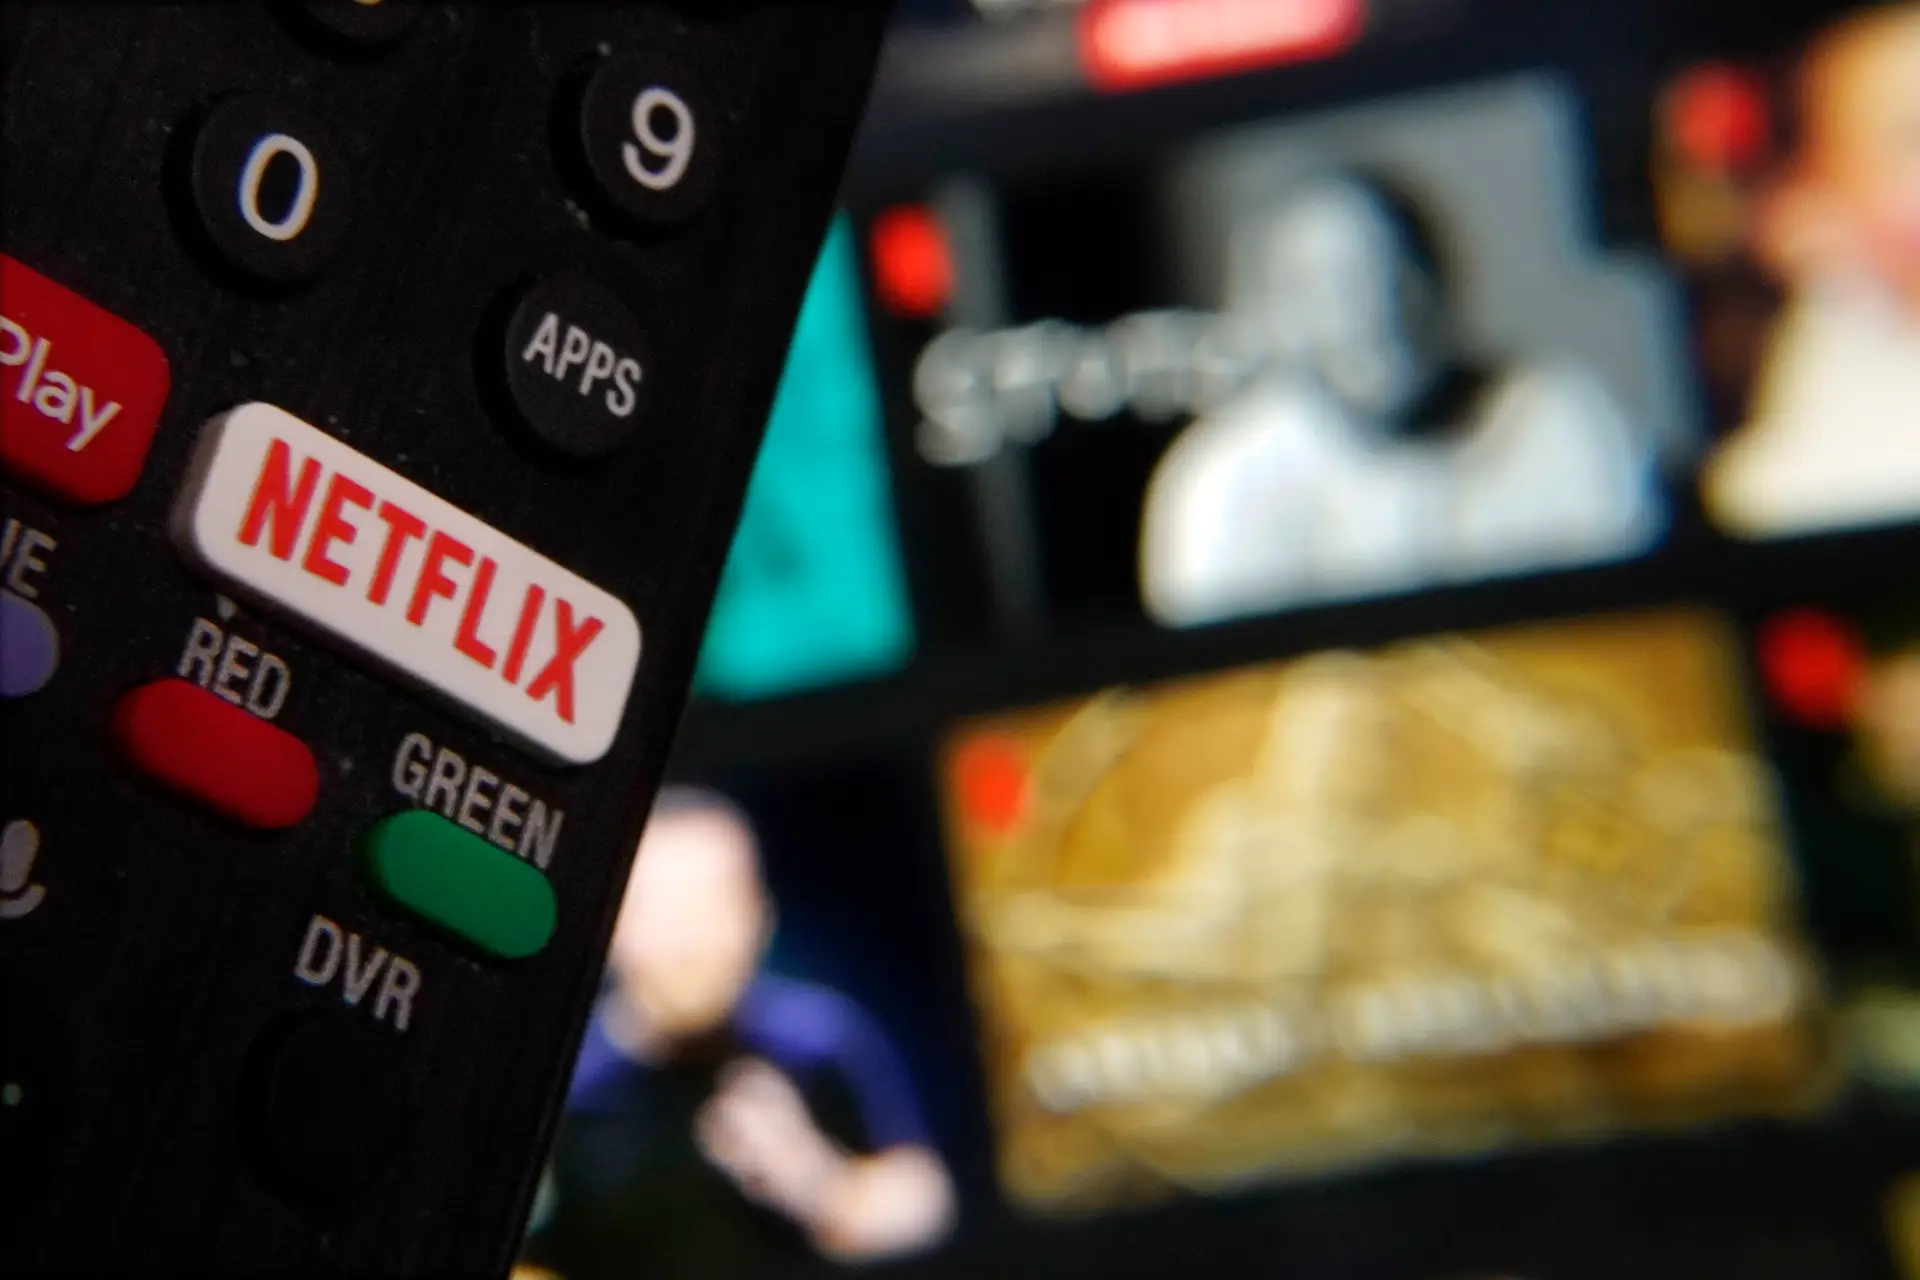 Netflix está com vagas de emprego para o Brasil; confira as oportunidades -  ISTOÉ DINHEIRO